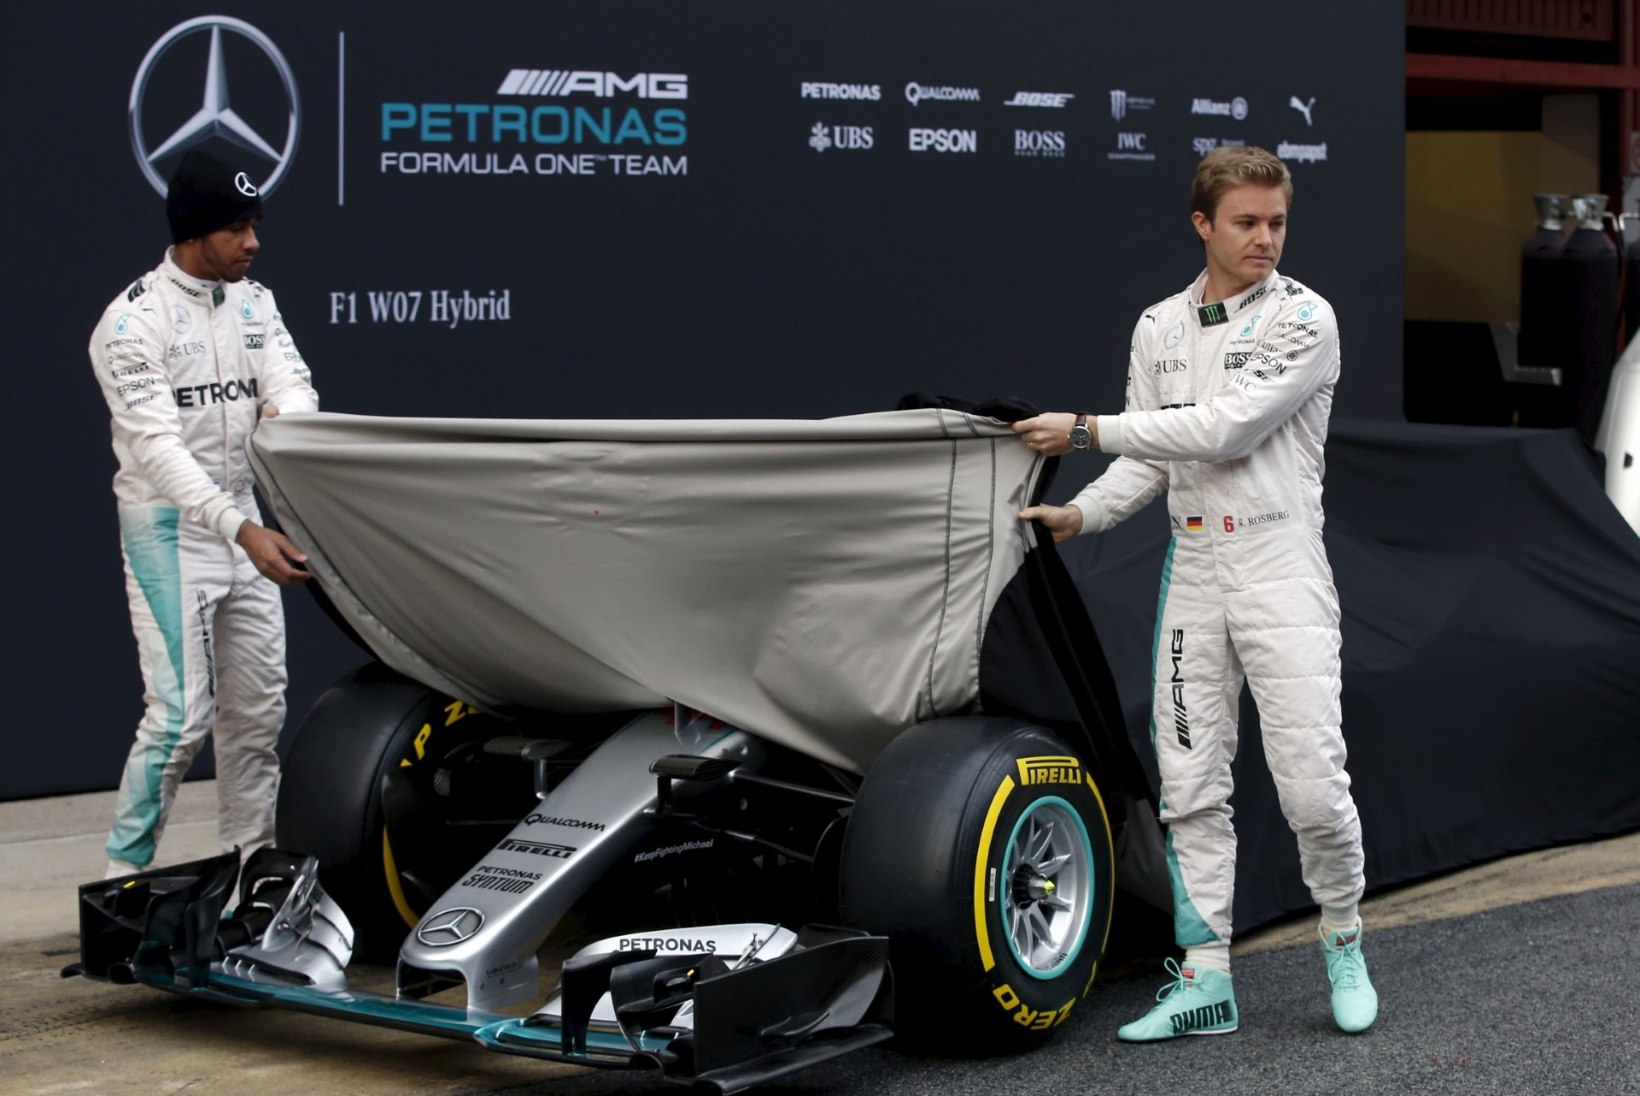 Taktikamäng läks käima! Hamilton ja Rosberg valisid Austraalia GPks erineva rehvitaktika